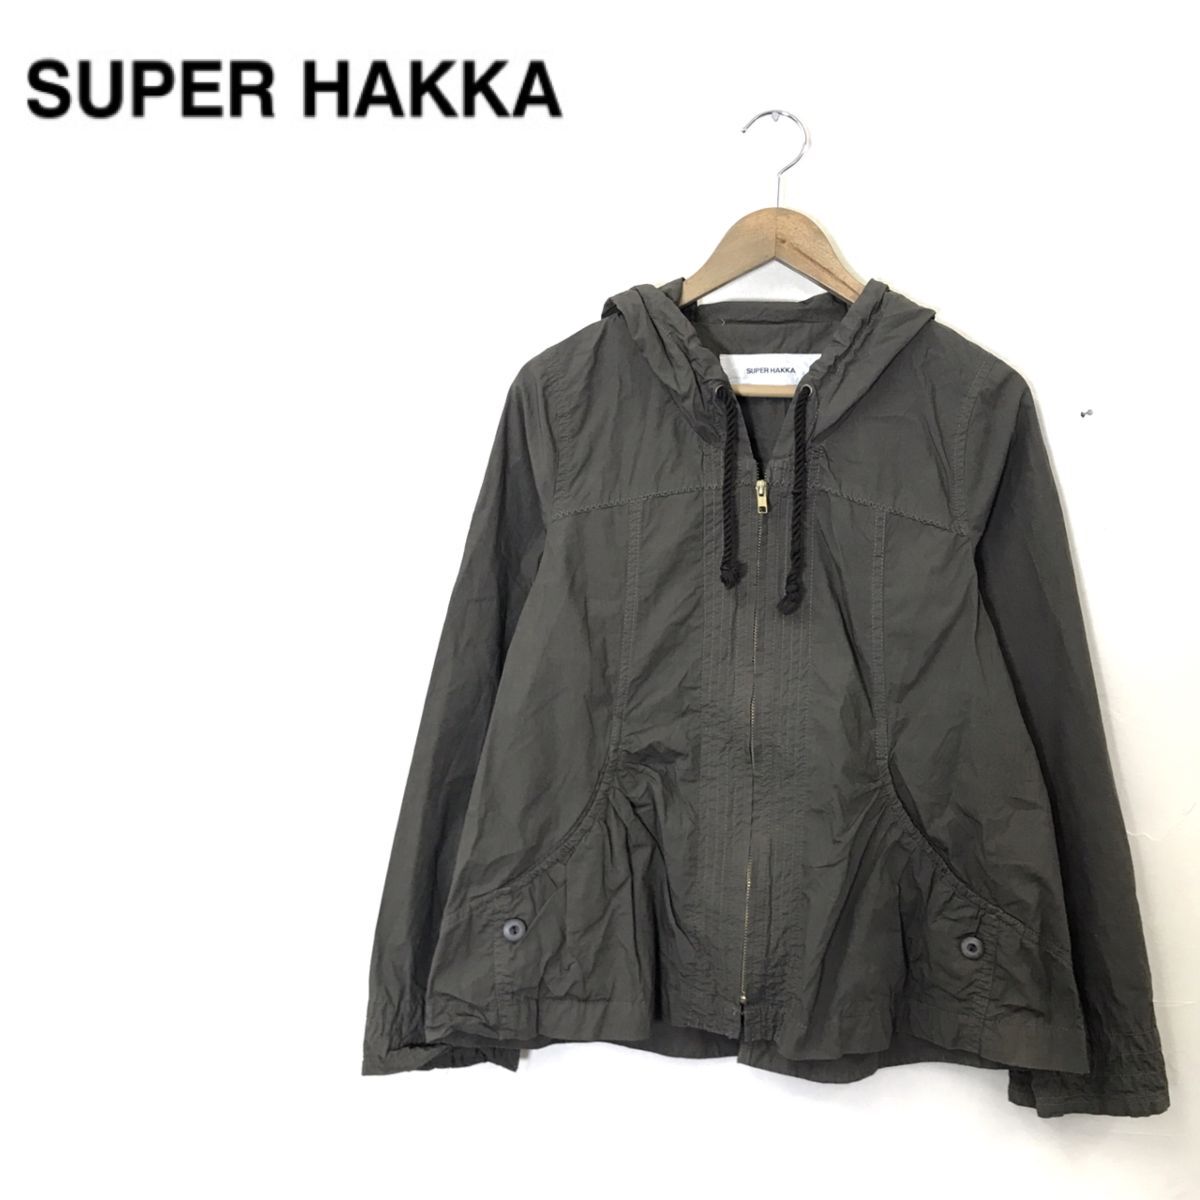 M702-U*SUPER HAKKA Super Hakka джемпер капот карман есть дизайн стежок натуральный ga- Lee *size неизвестен хаки хлопок 100%